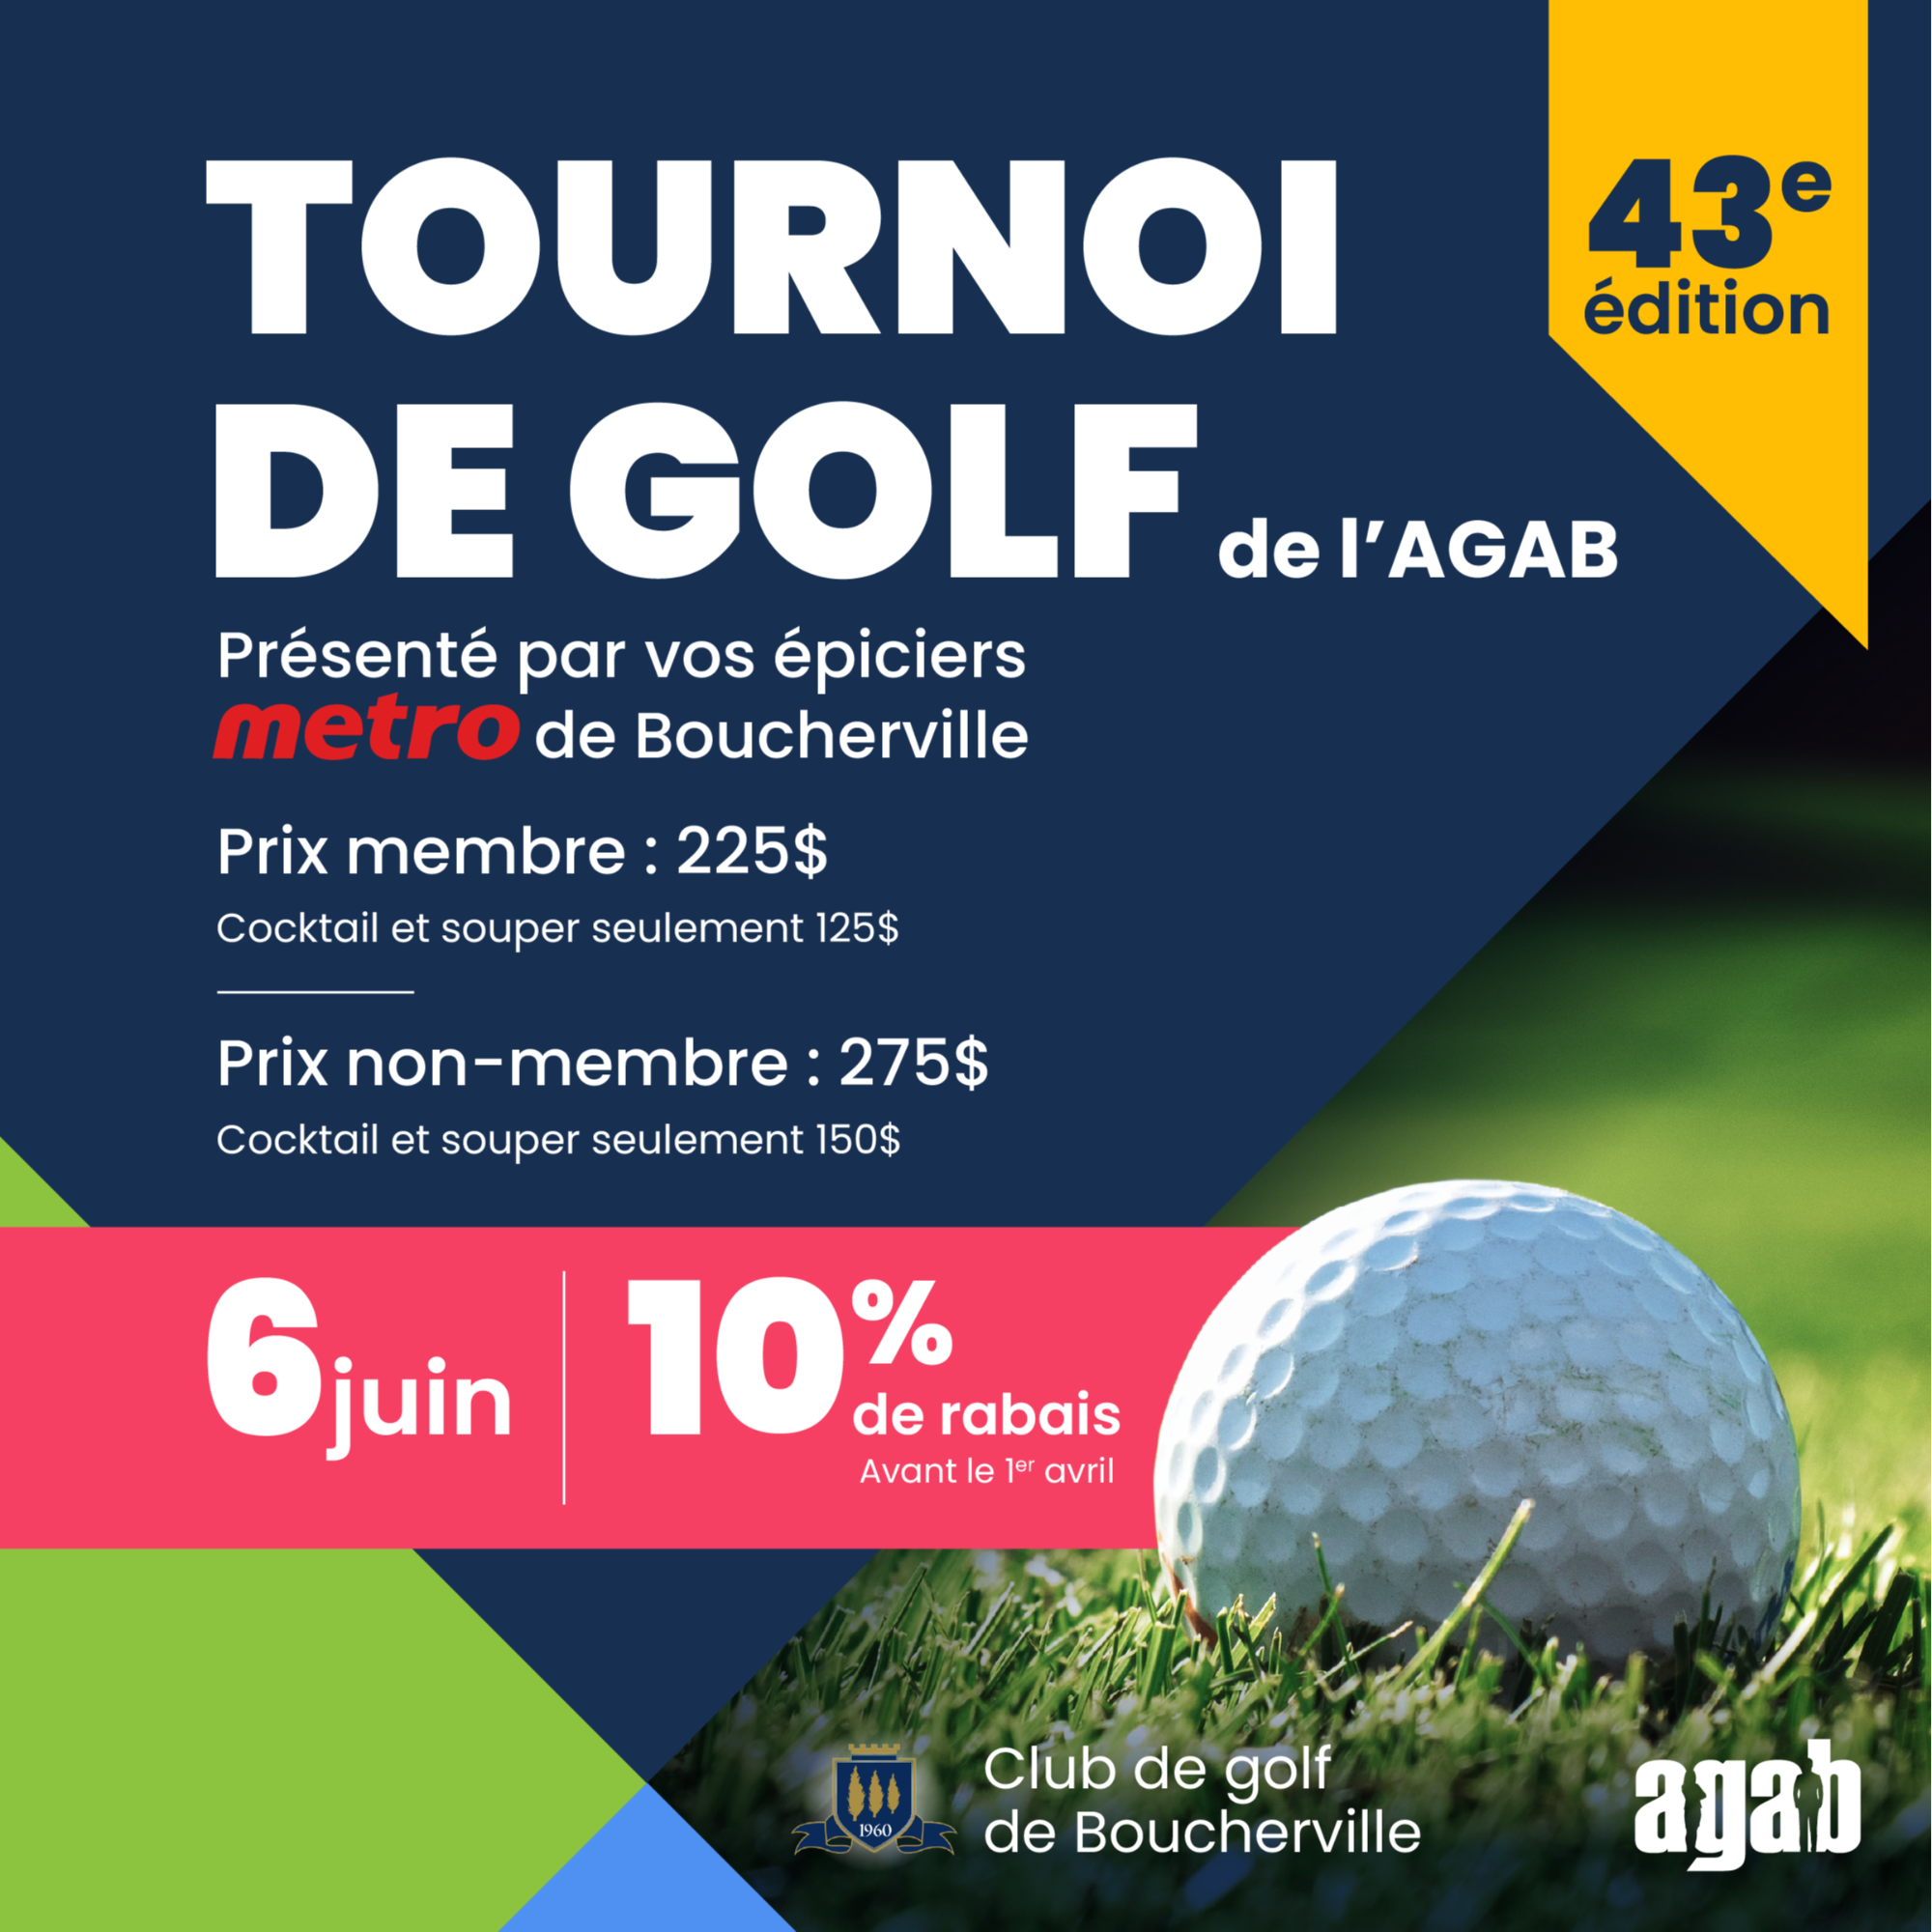 43e édition du Tournoi de golf de l'AGAB 6 juin 2023